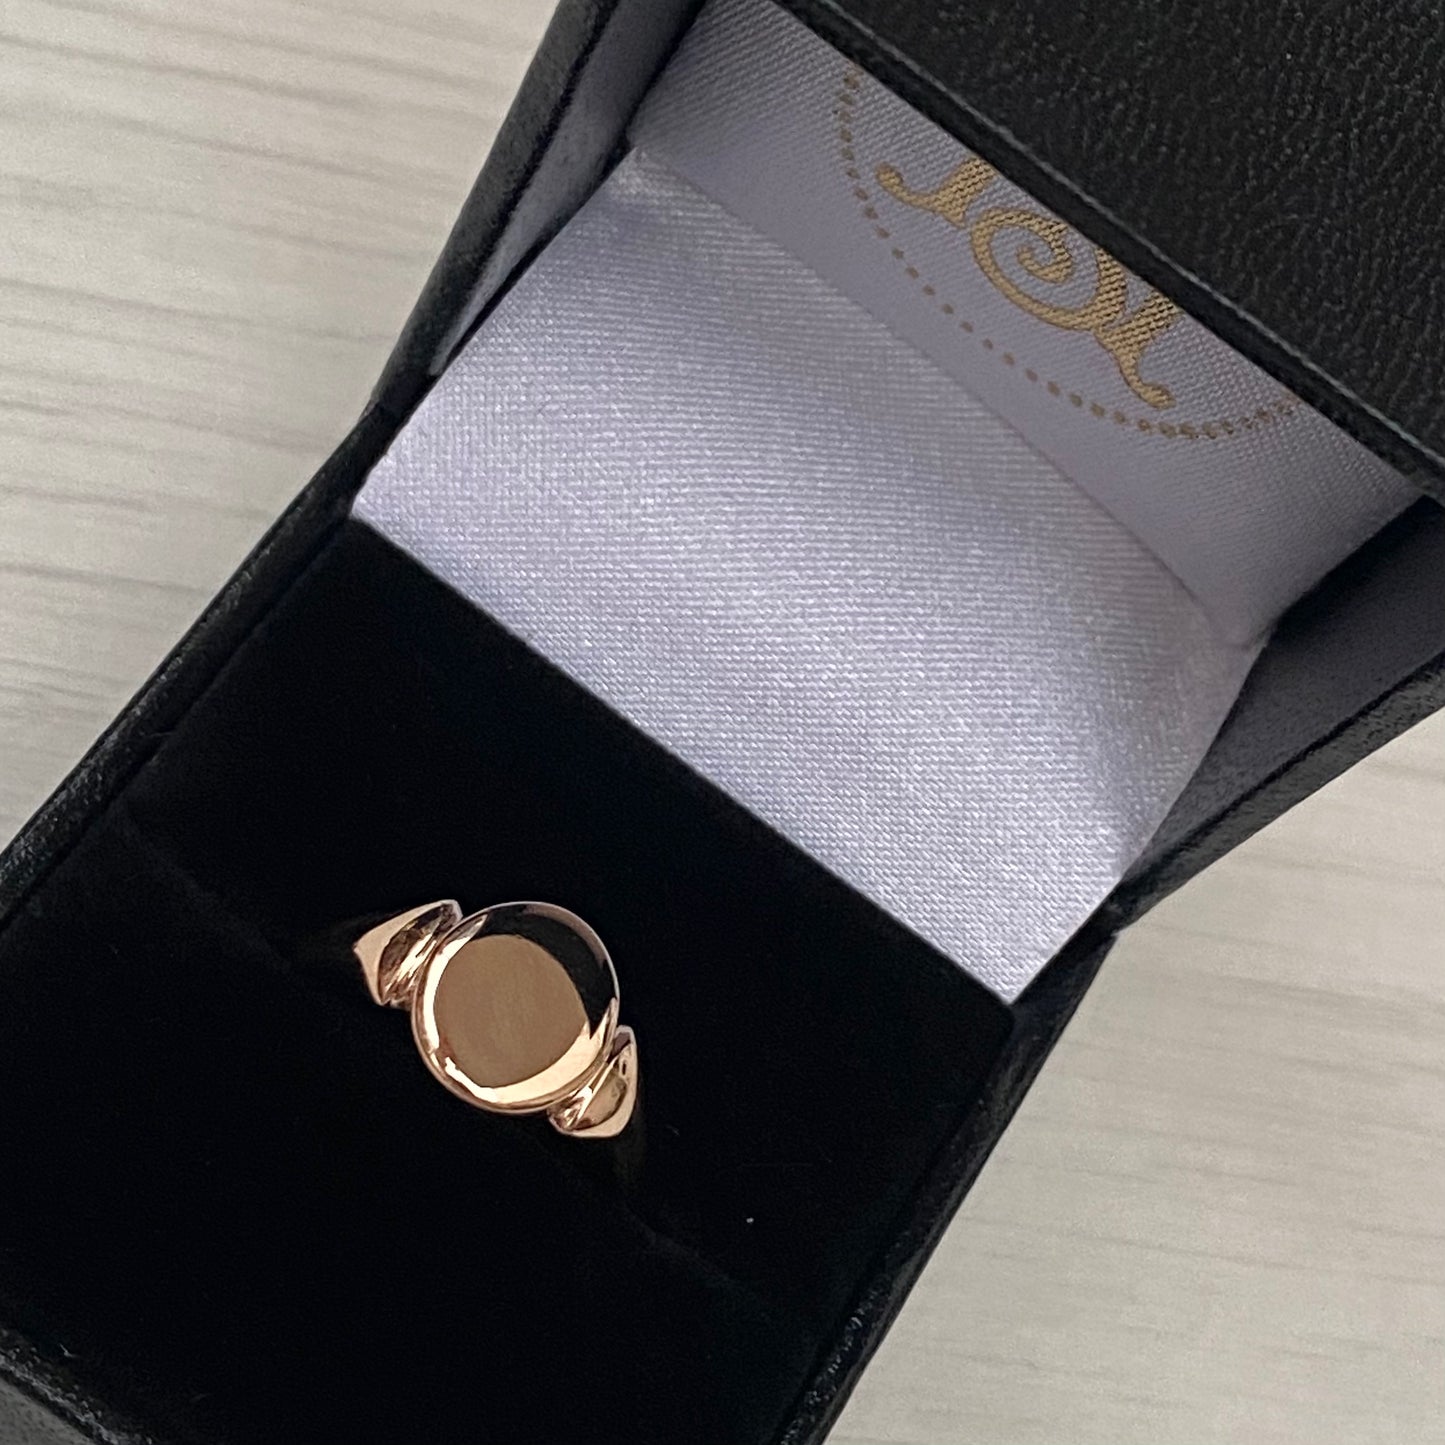 Vintage 9ct rose gold oval signet ring